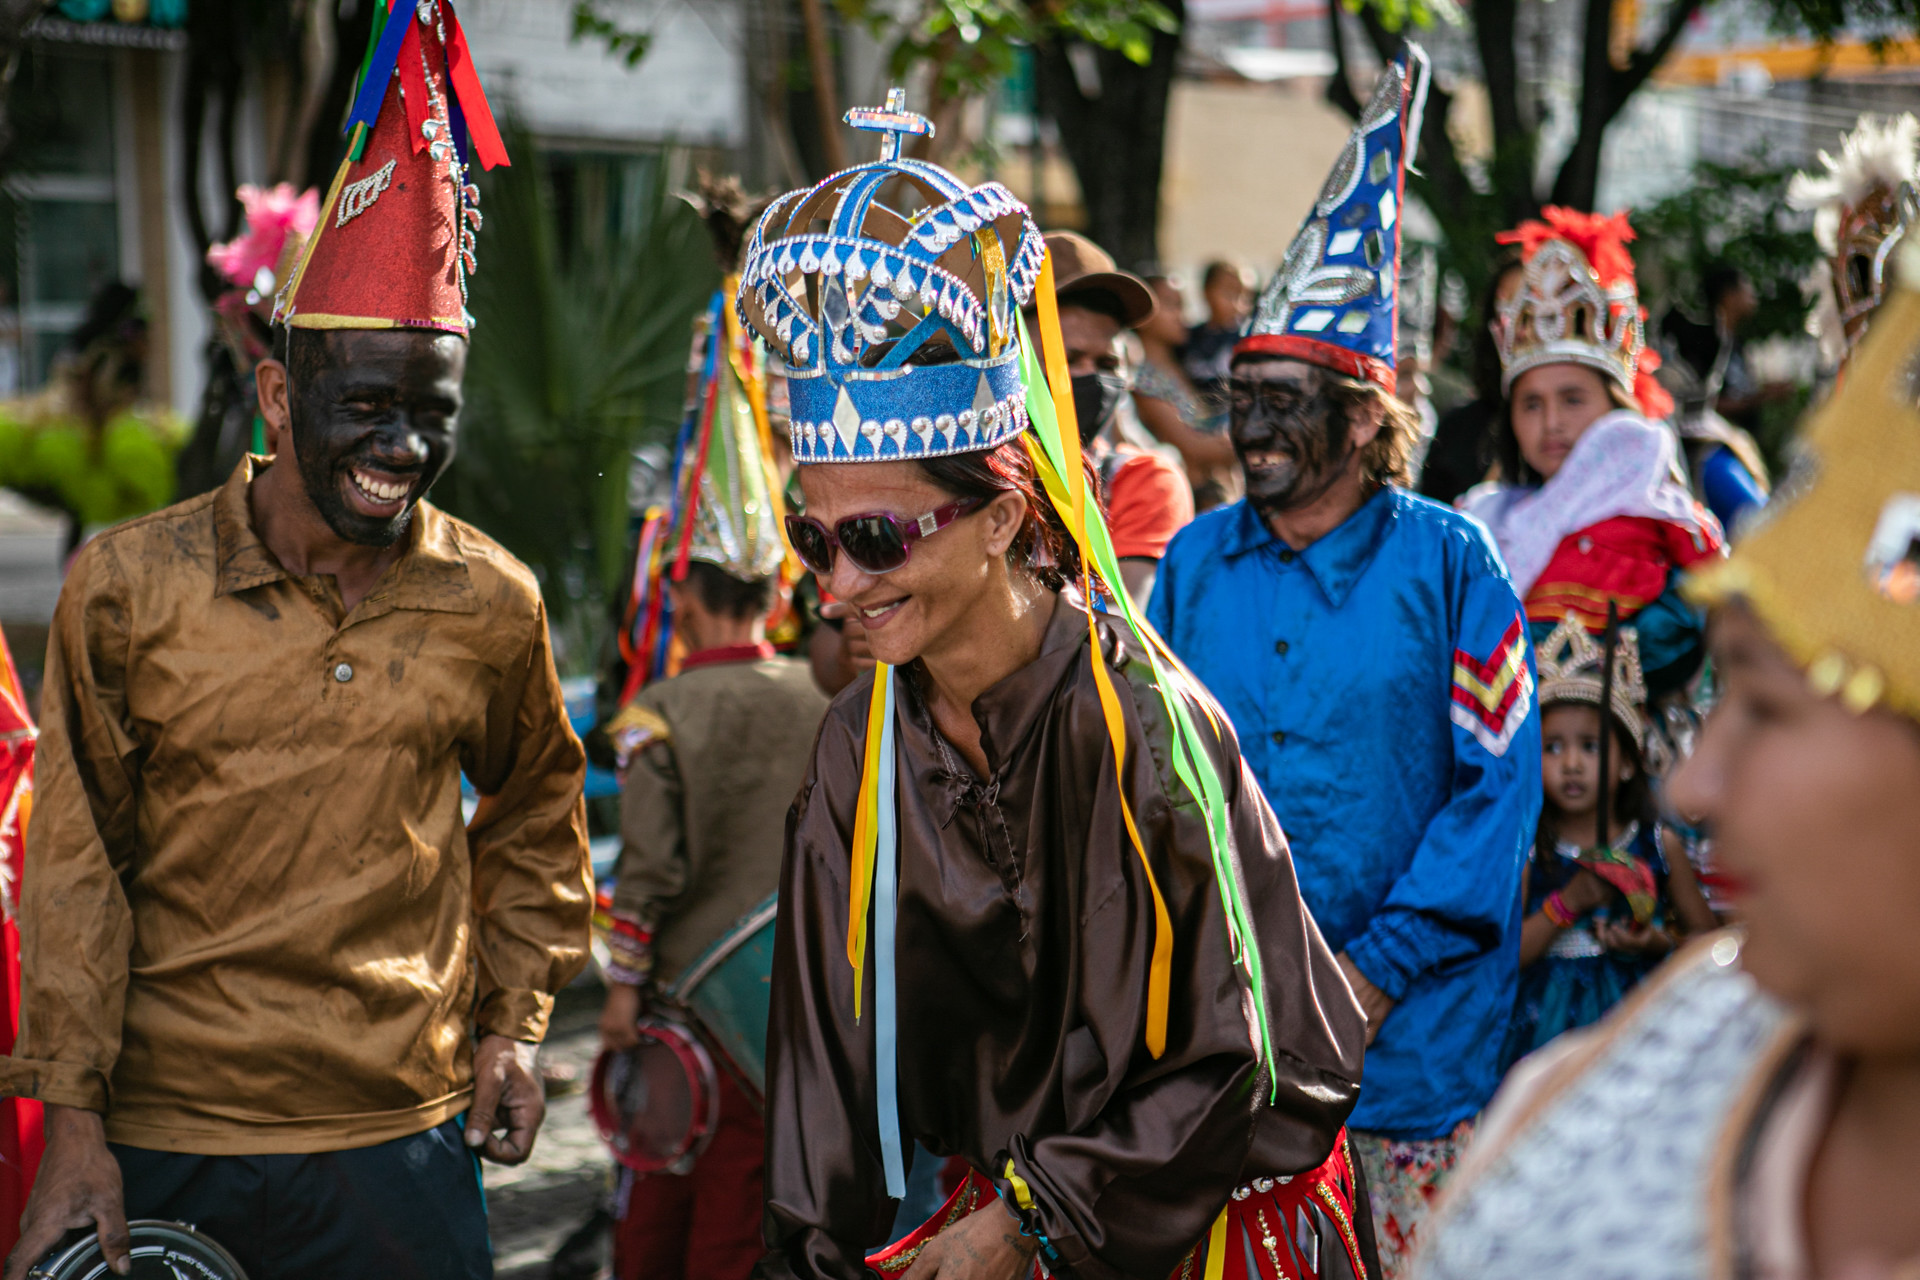 Com marca na pluralidade, Mostra Sesc Cariri reforça ligação entre territórios culturais